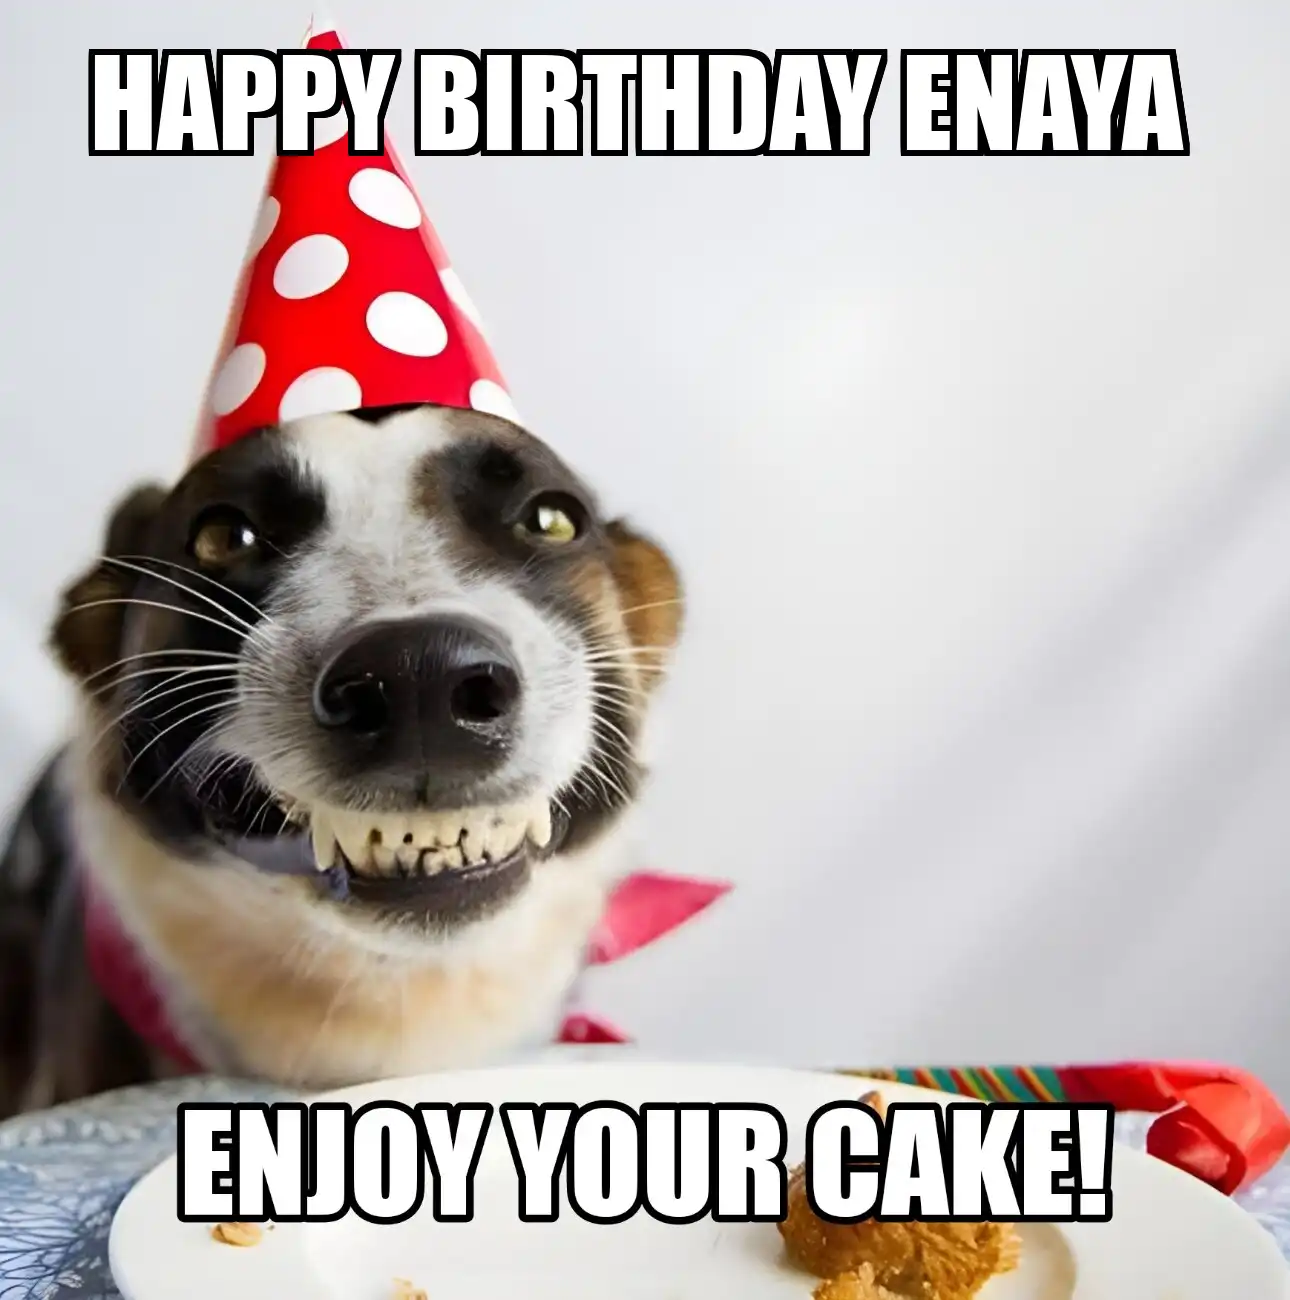 Happy Birthday Enaya Enjoy Your Cake Dog Meme